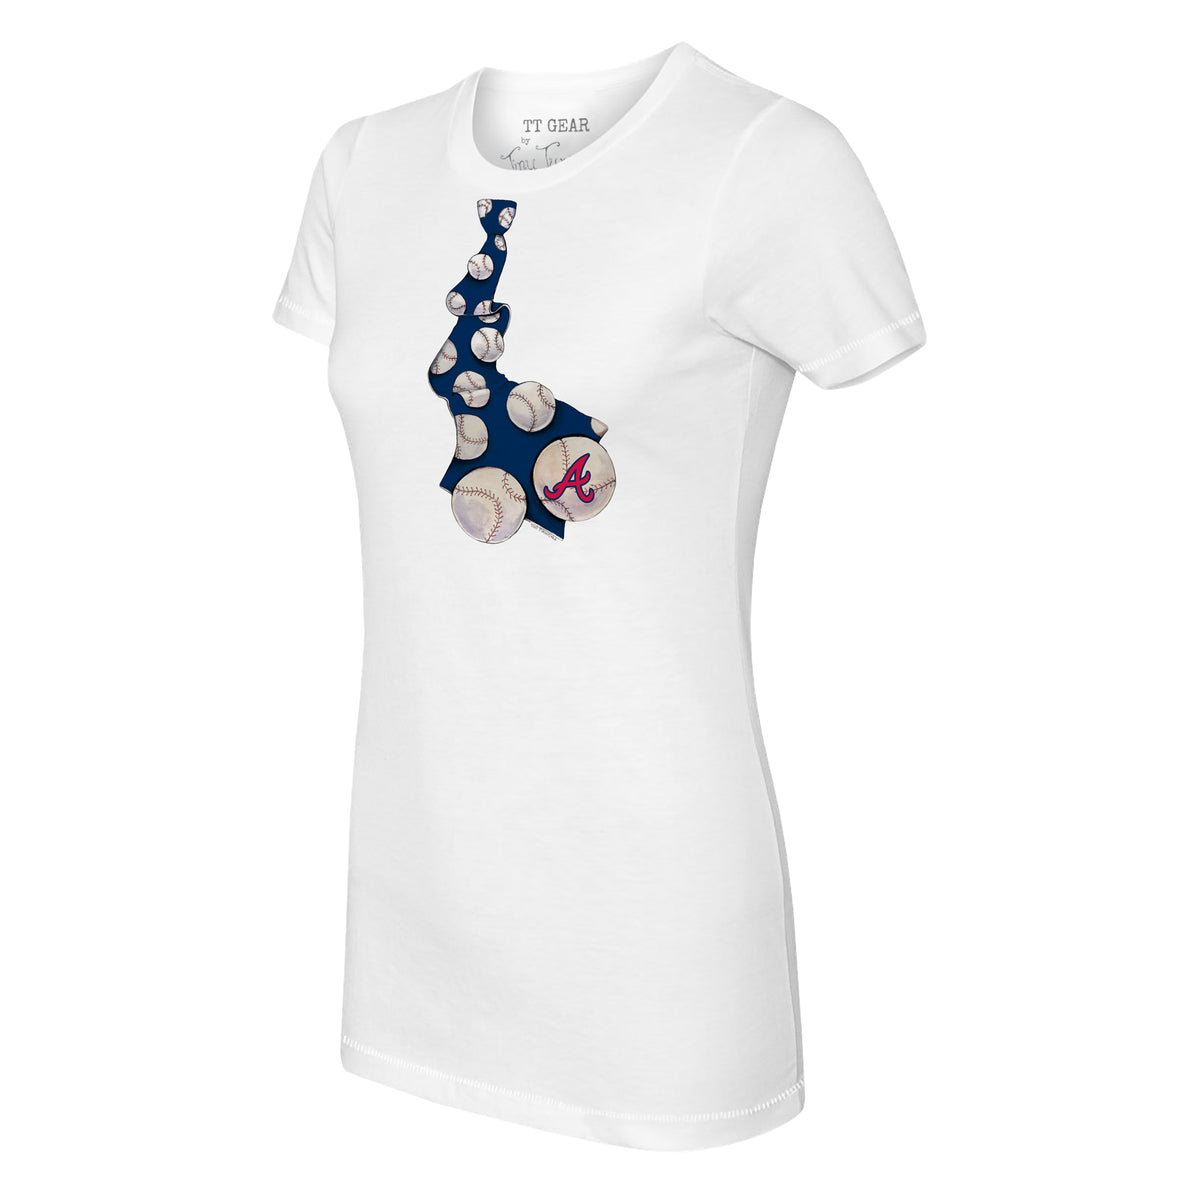 Women's Tiny Turnip Navy Houston Astros Baseball Pow T-Shirt Size: Extra Small